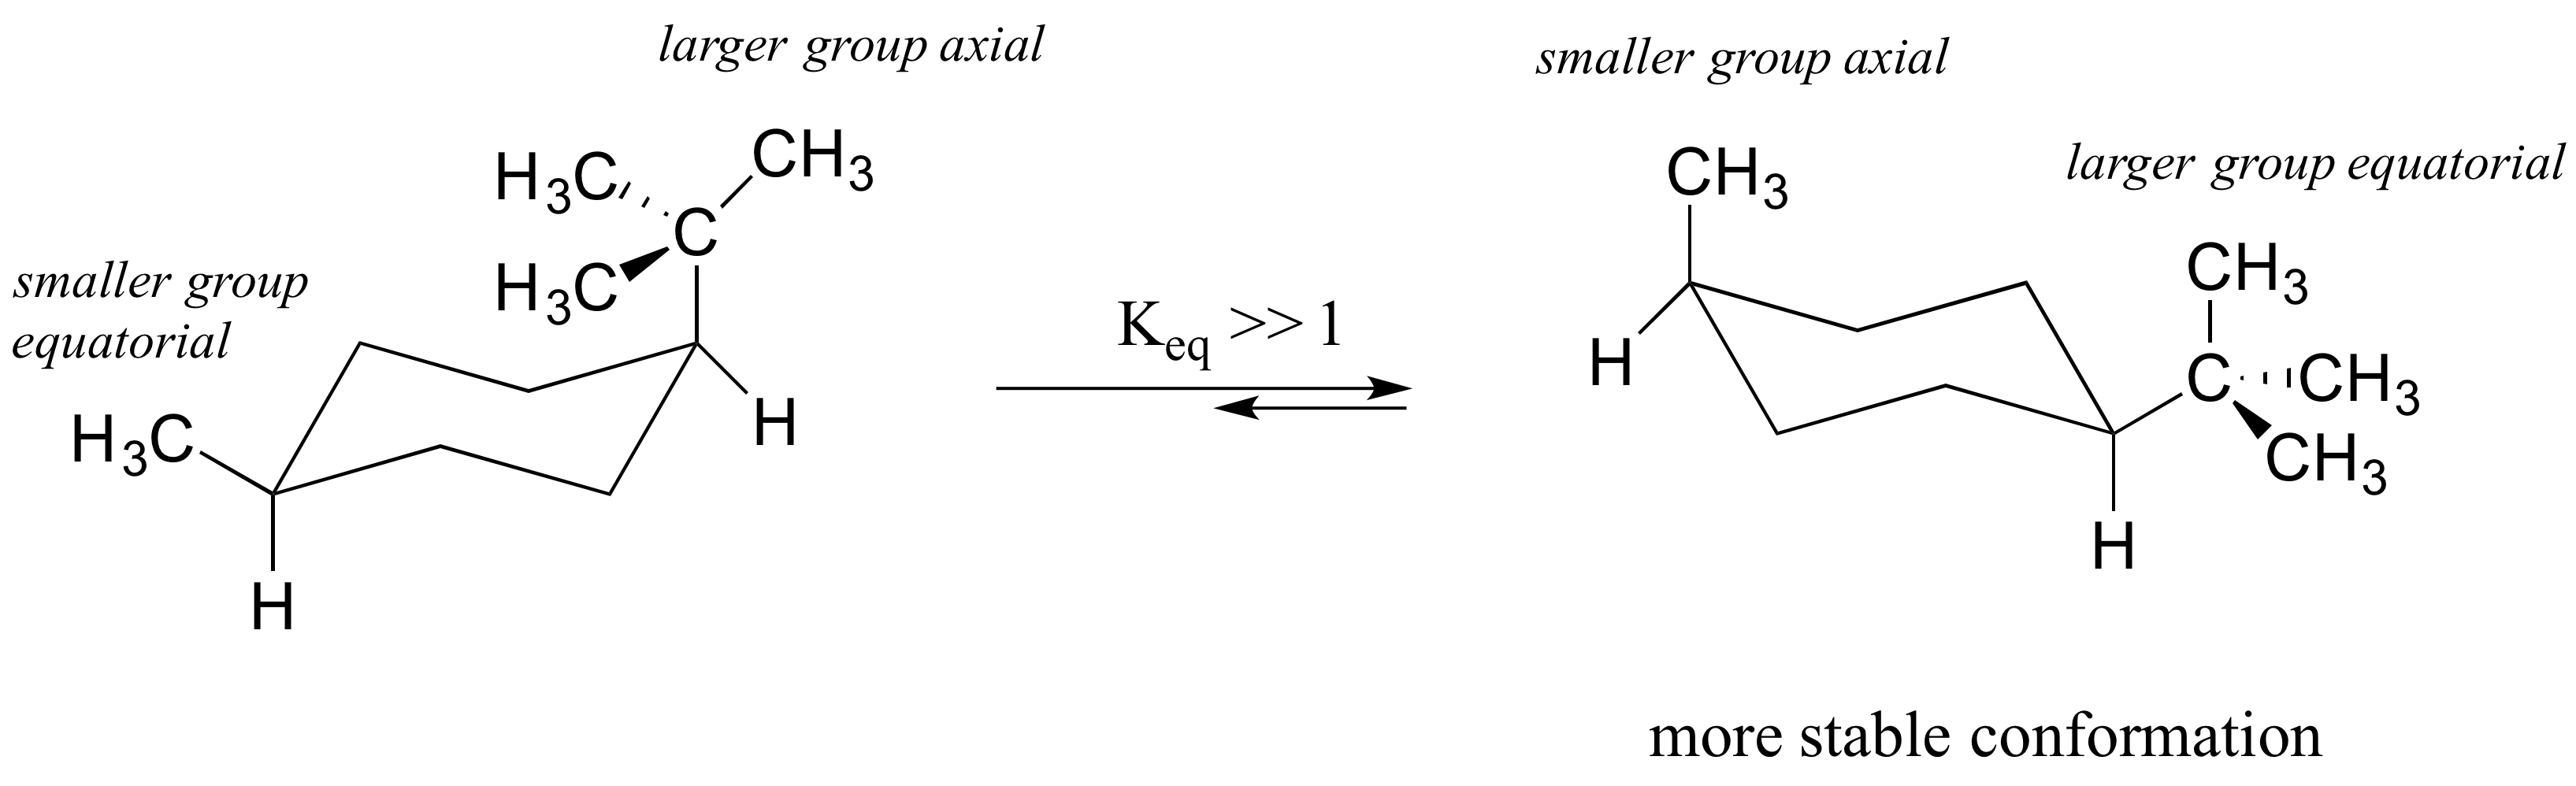 Izquierda: Ciclohexano con terc-butilo (grupo mayor) axial y metilo (grupo menor) ecuatorial. Derecha: Metilo (grupo menor) axial y terc-butilo (grupo mayor) ecuatorial. Conformación más estable. Constante de equilibrio mucho mayor a uno.